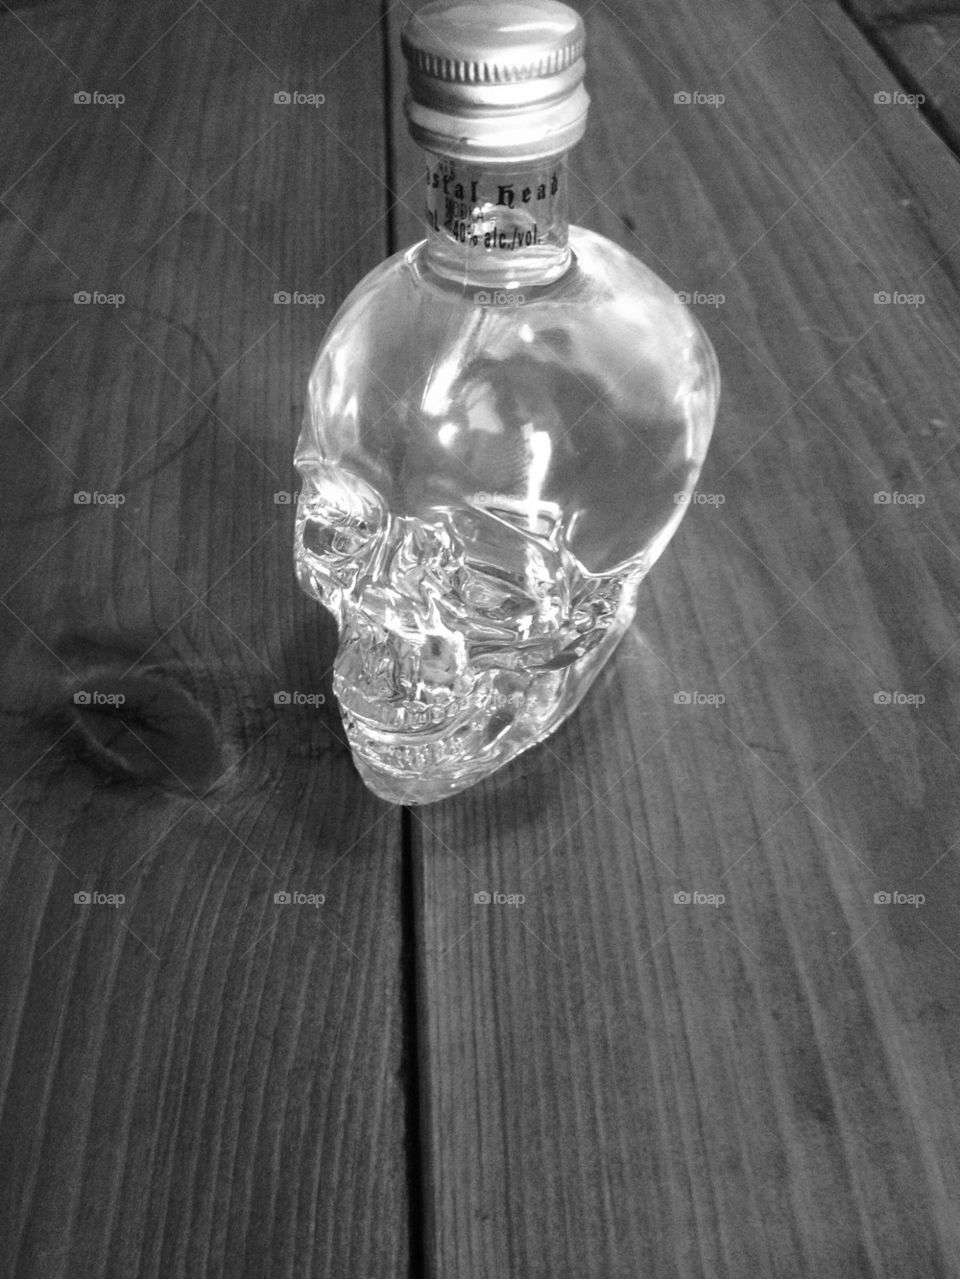 Crystal Skull on Table